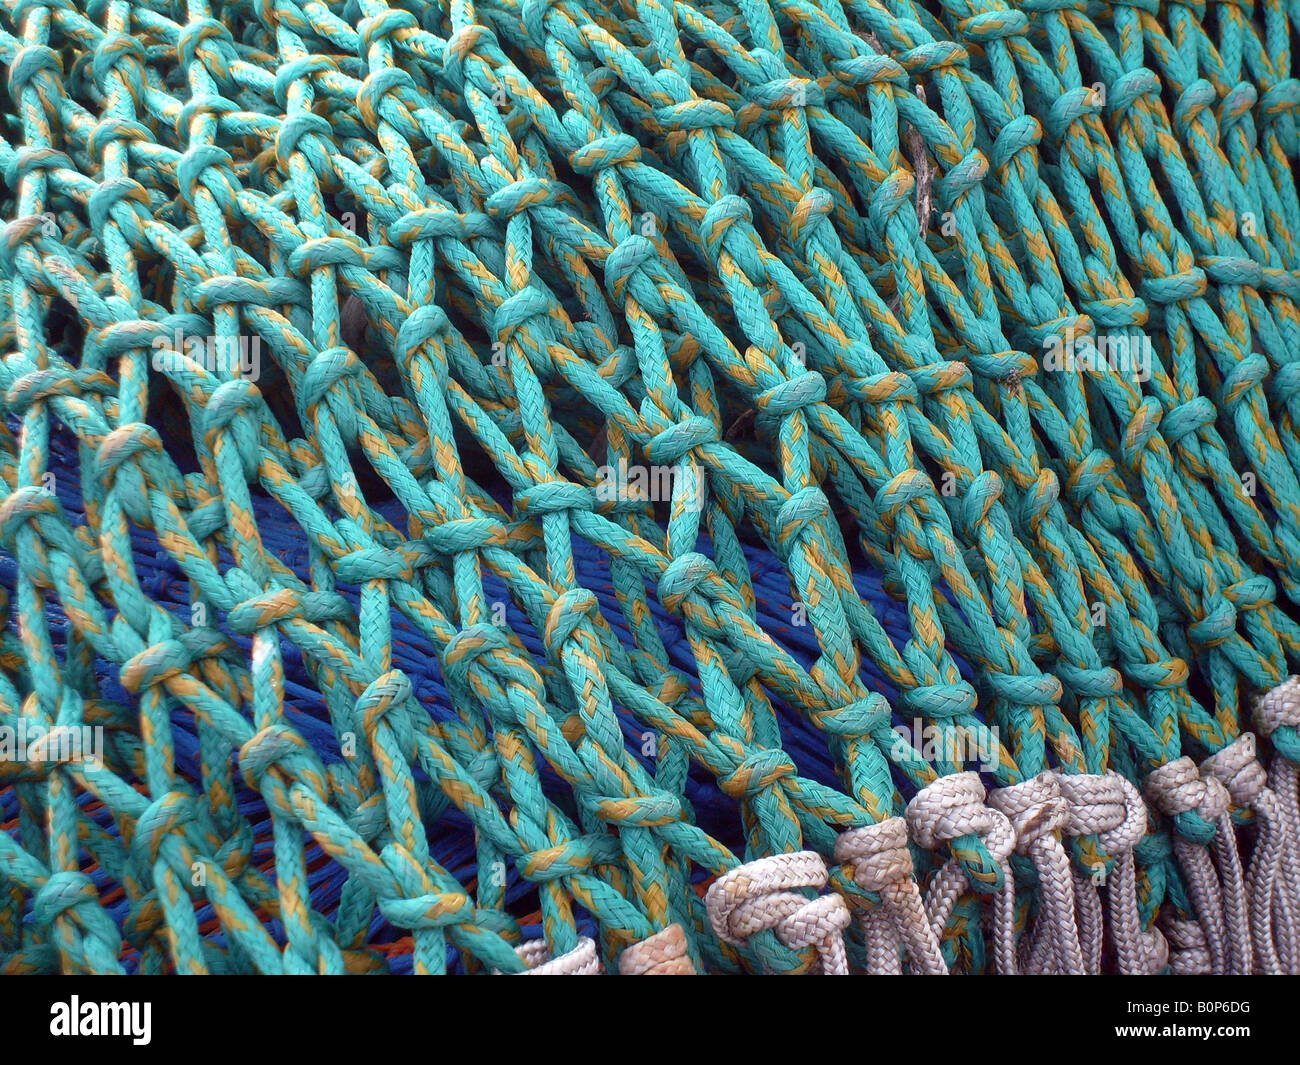 Nahaufnahme von Fischernetzen auf Trawler Schiff zeigt Details. Stockfoto